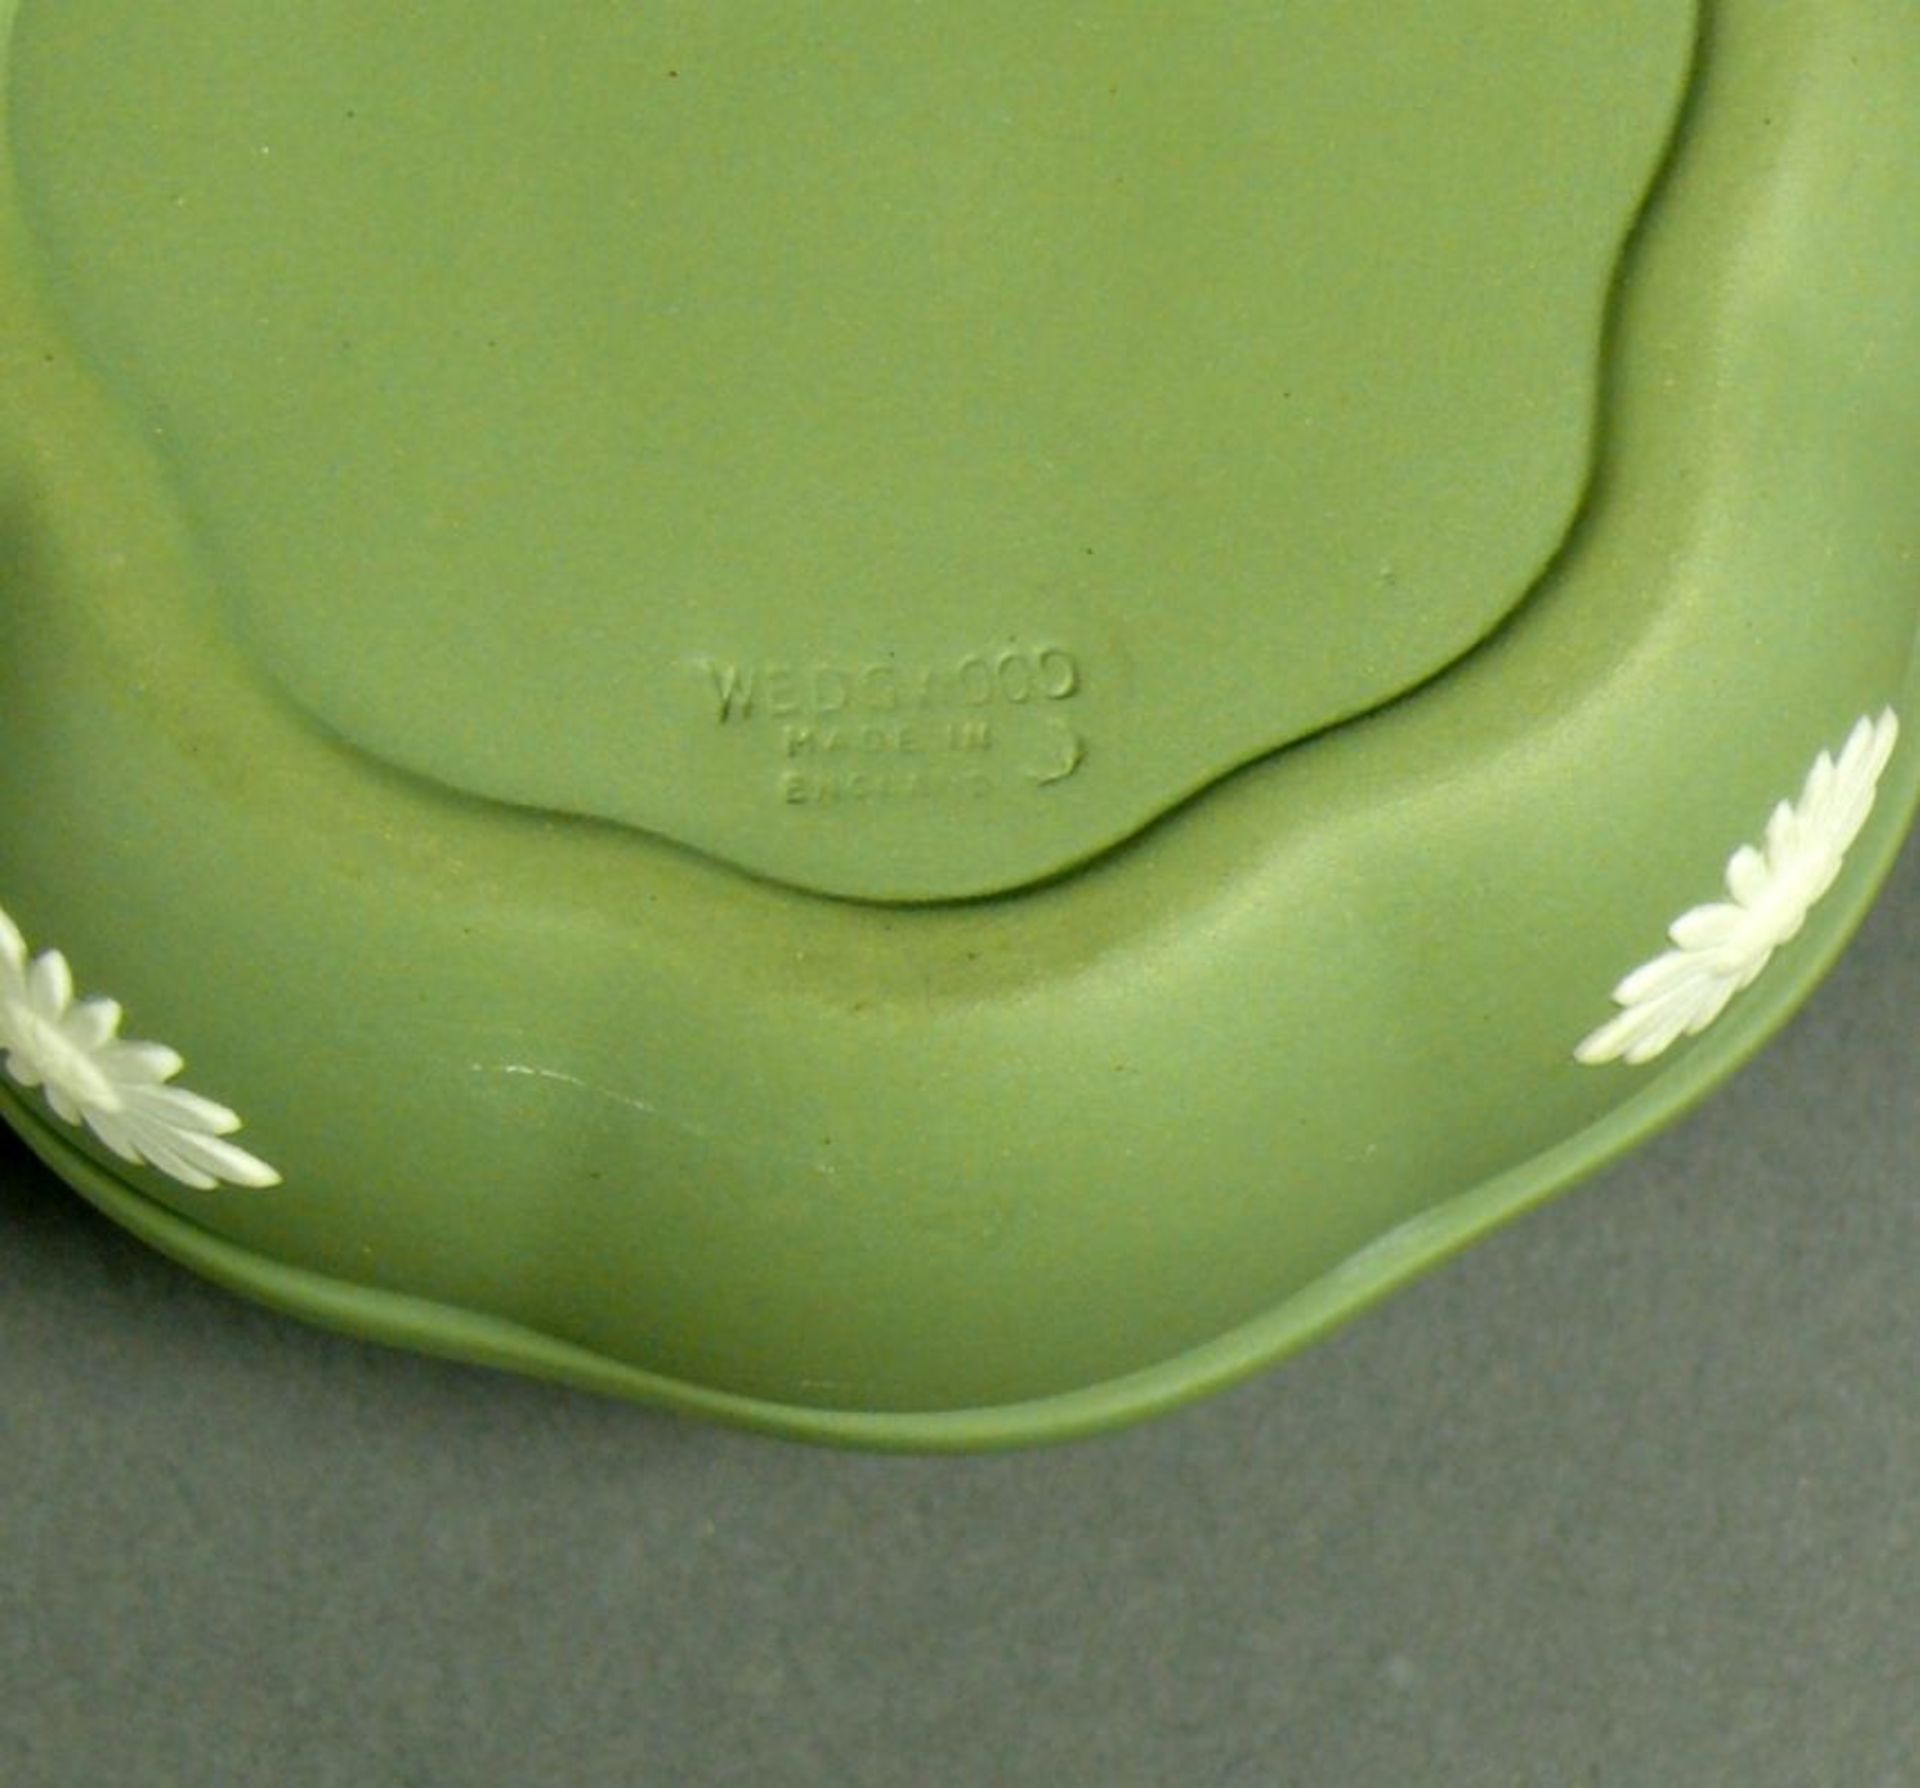 Deckeldose (Wedgewood) lindgrün und hellgrau; H: 4,5 cm; D: 8,5 cm - Bild 3 aus 3